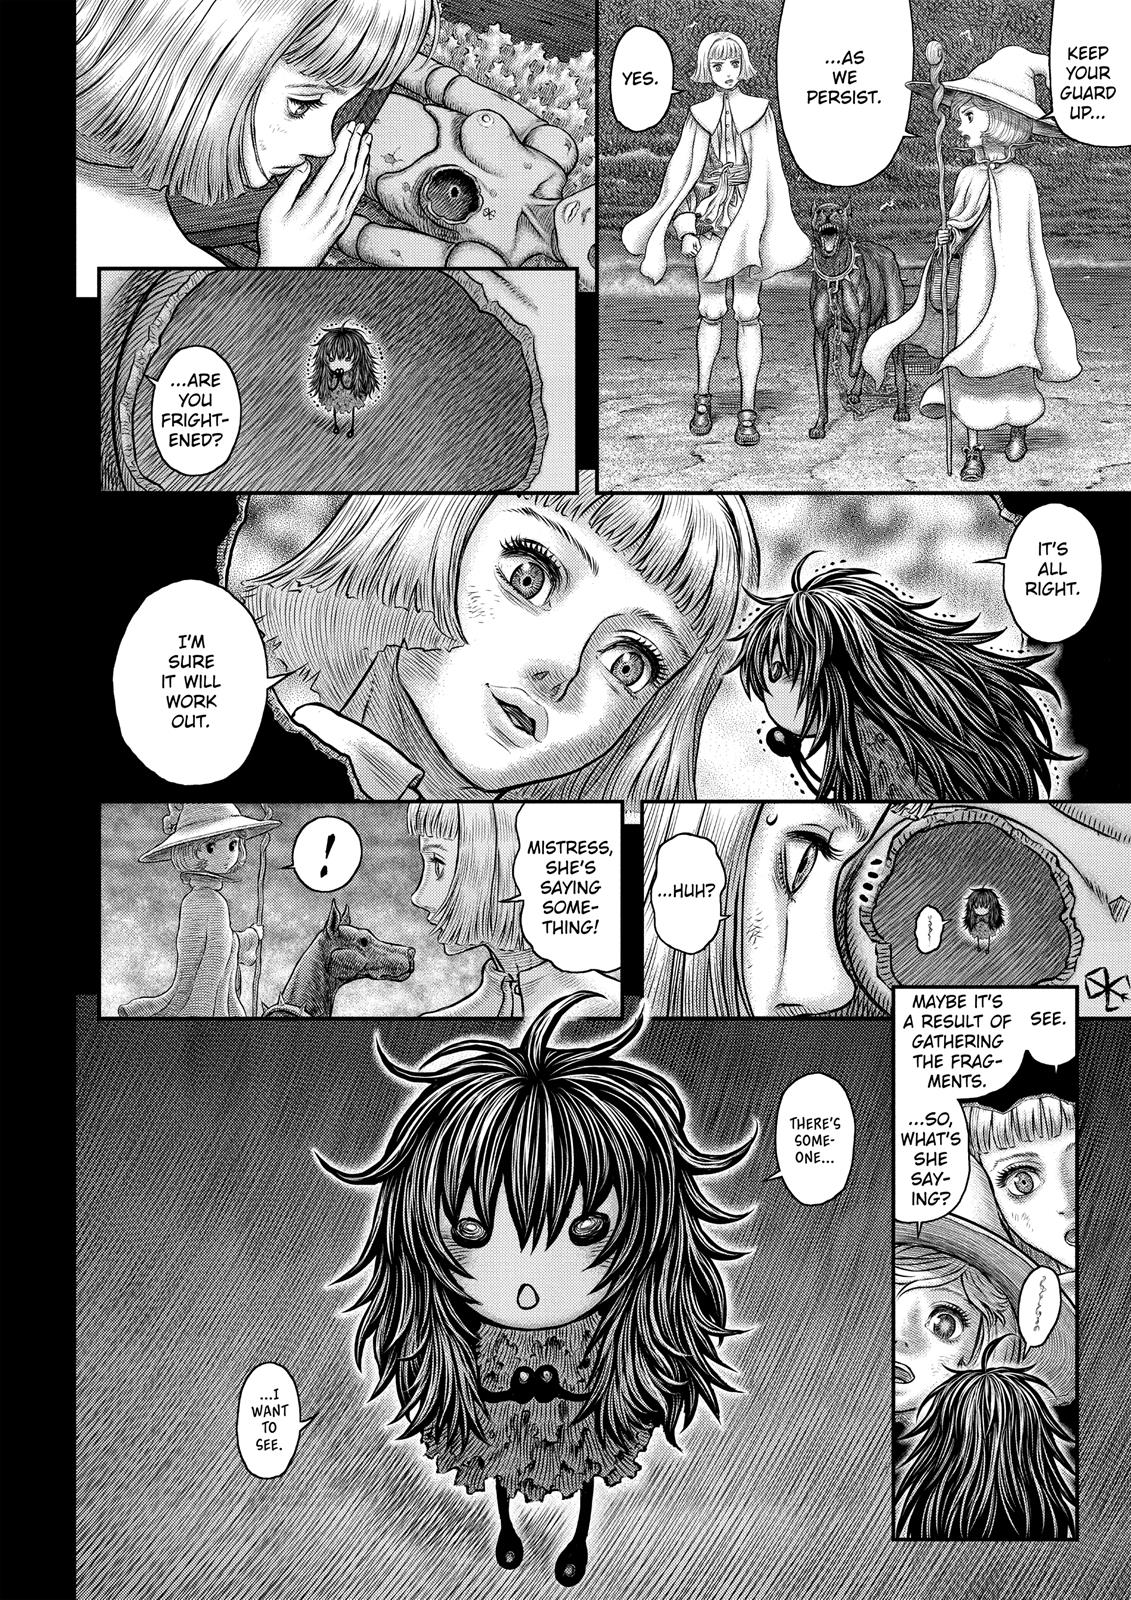 Berserk Manga Chapter 350 image 17